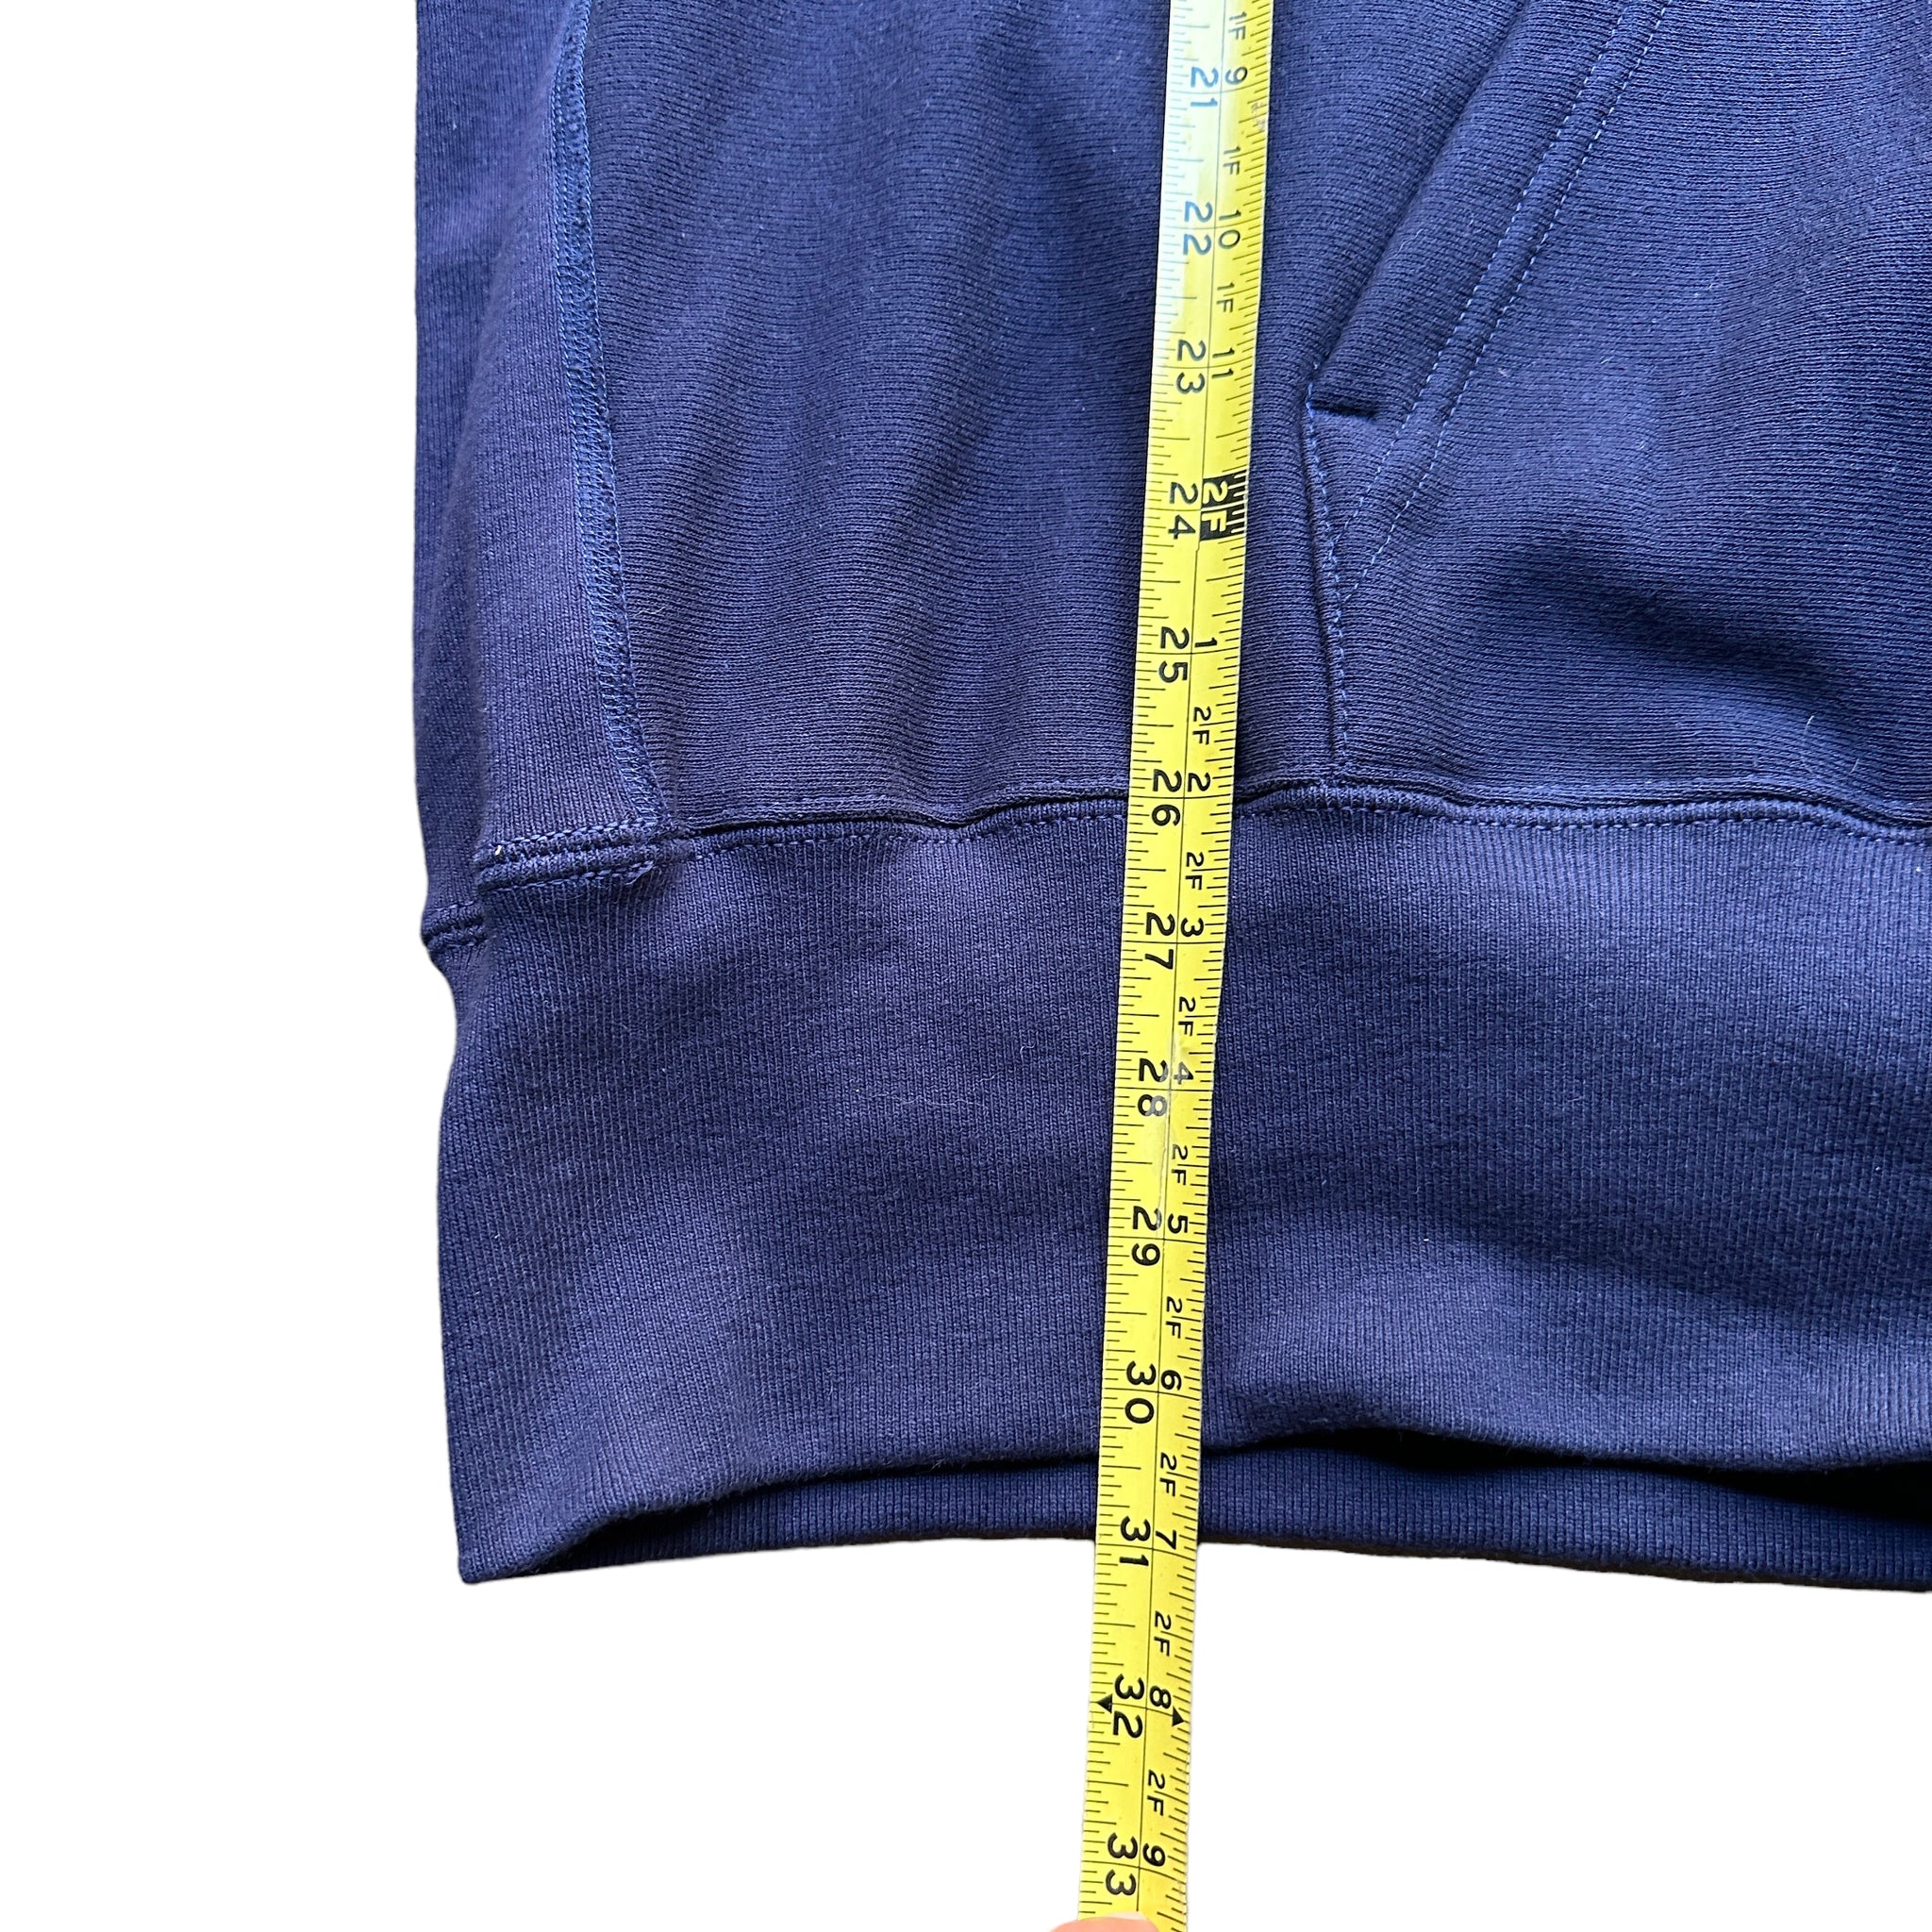 Camber hooded sweatshirt 2XL-3XL